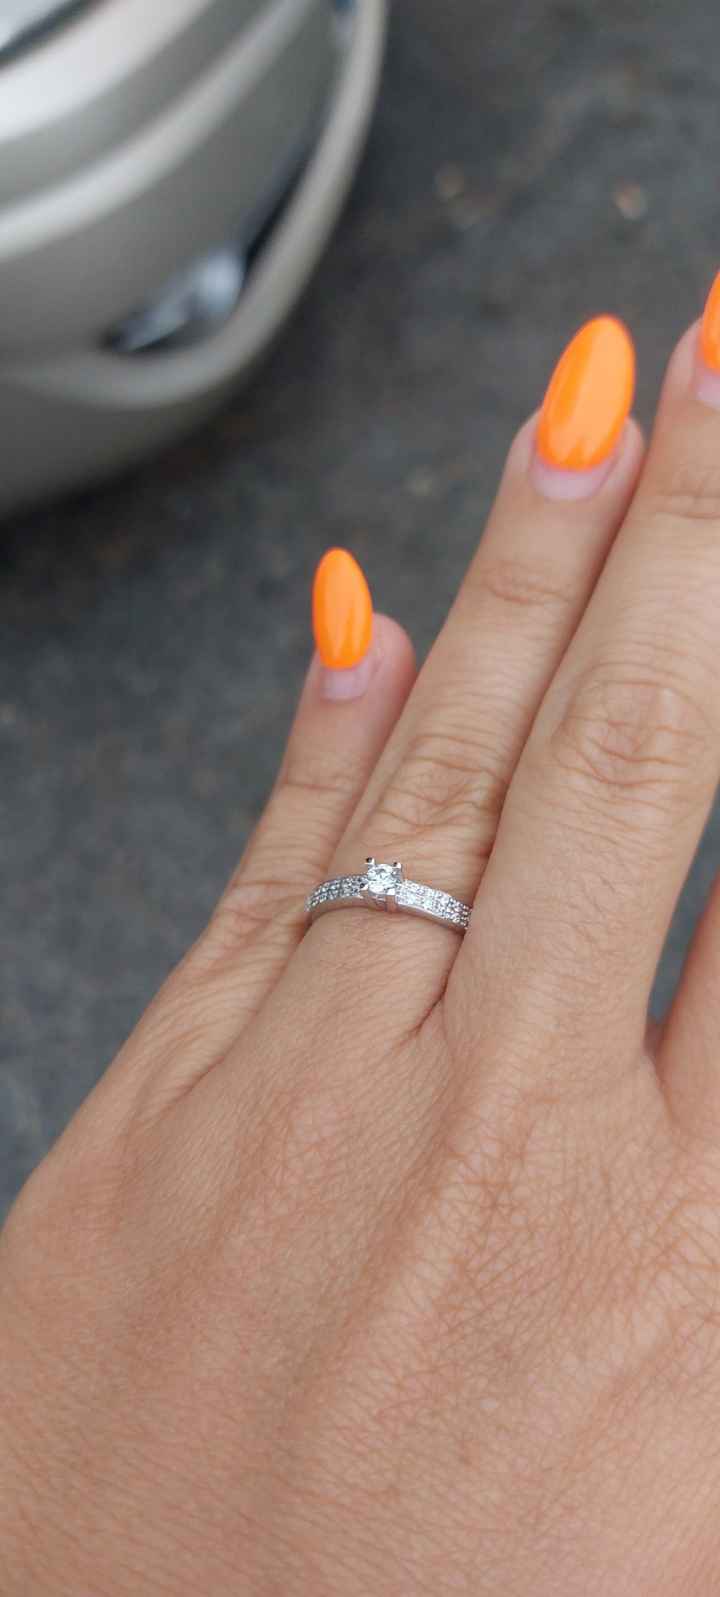 Partilha uma foto do teu anel de noivado! 💍 - 1